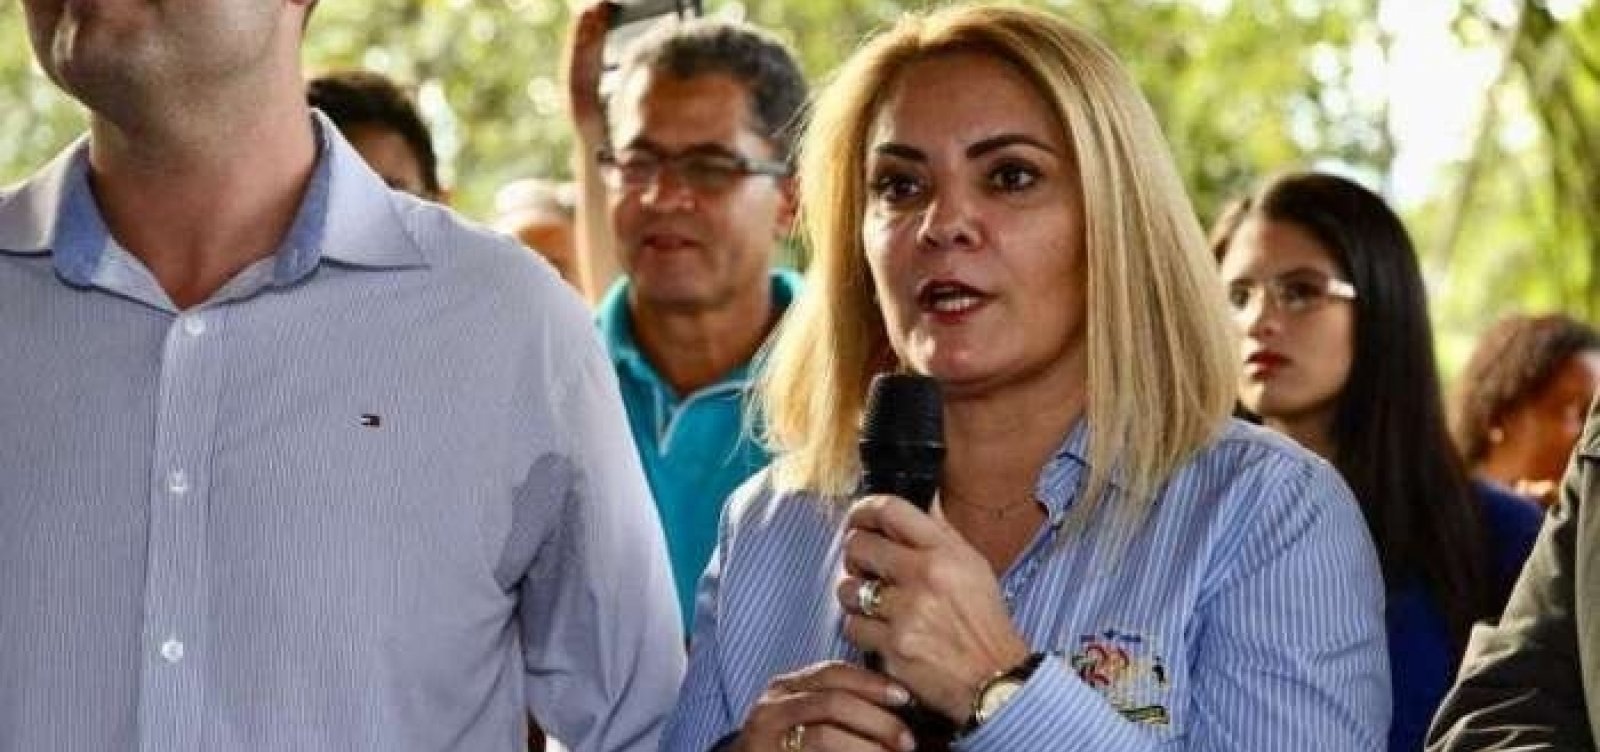 Parentes de ex de Bolsonaro retiraram R$ 2,1 milhões em mais de 4 mil saques, diz jornal